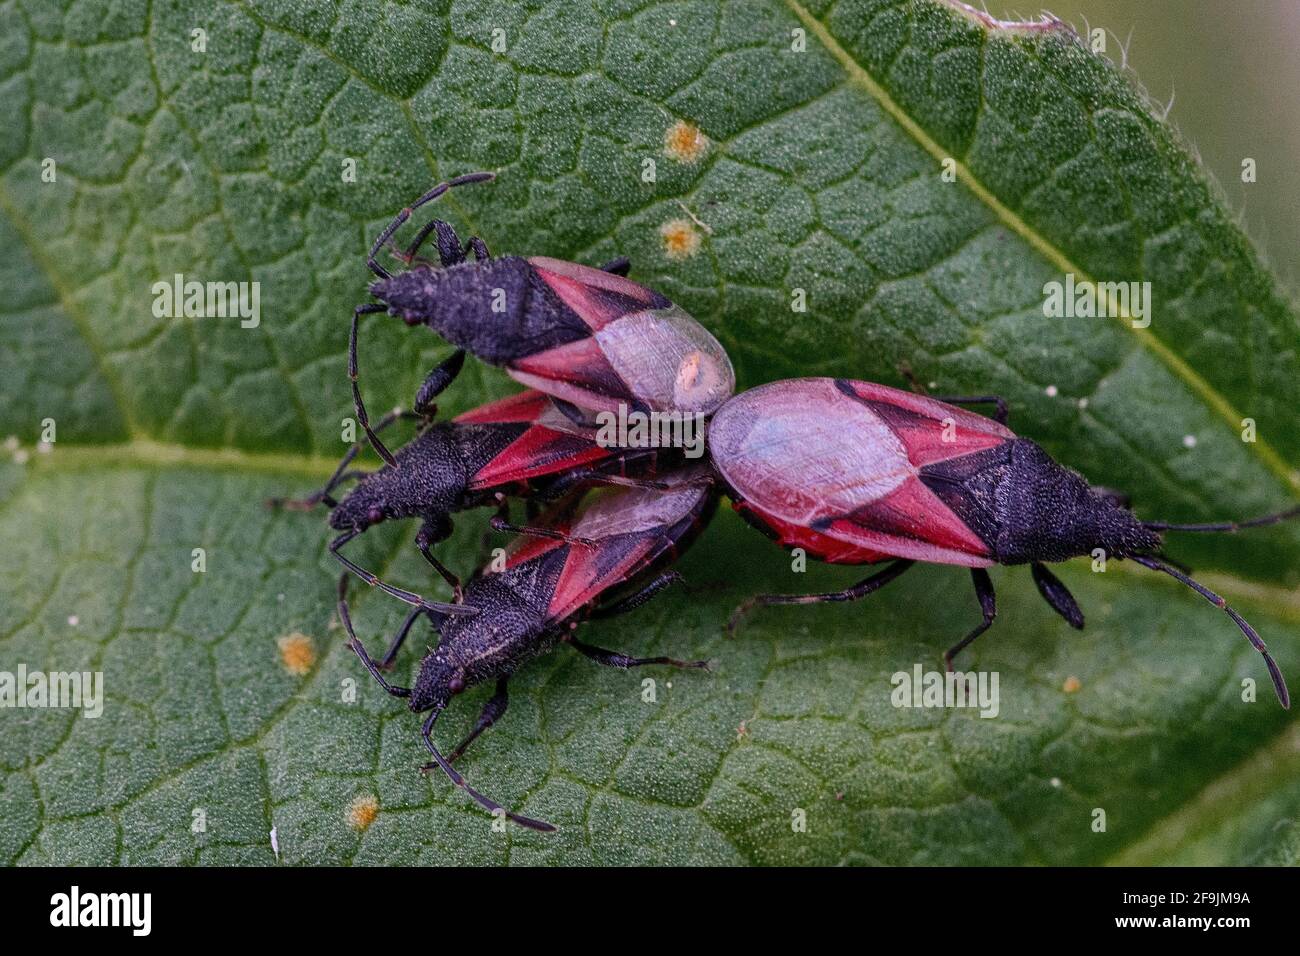 macro photographie d'insectes, connus sous le nom de punaises de feu, certains sont accouplement. Banque D'Images